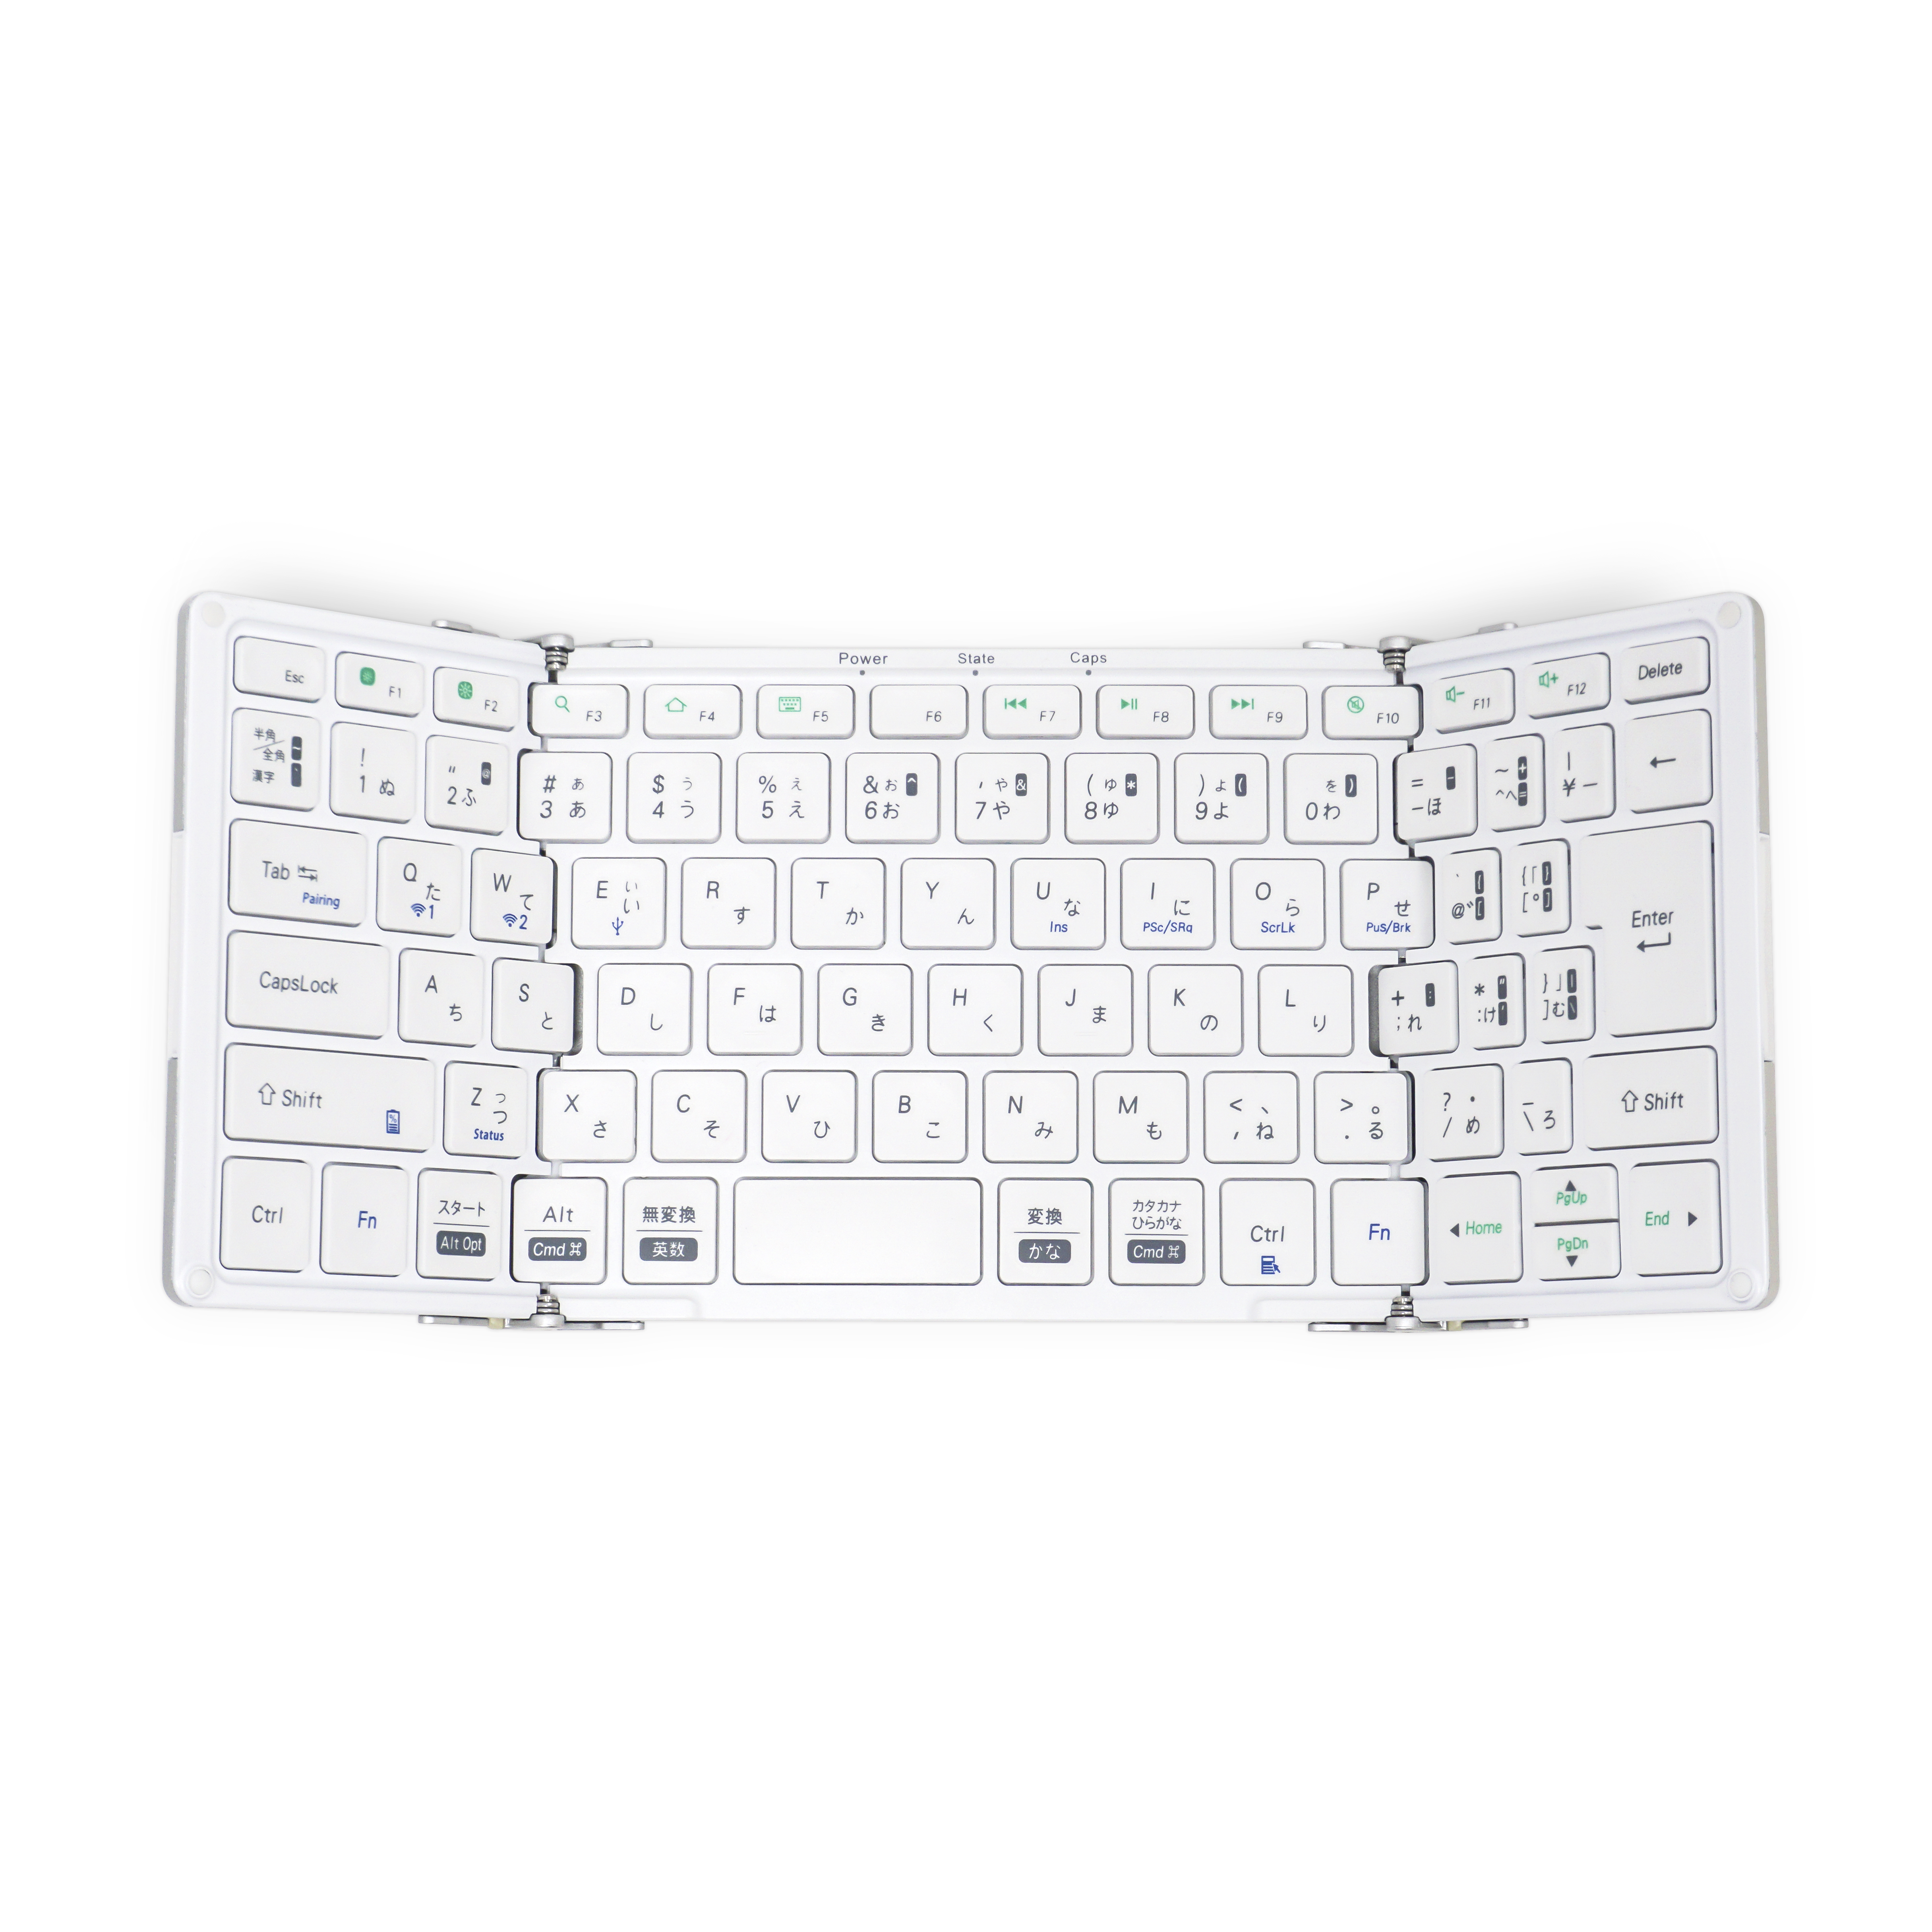 MOBO Keyboard 2 | MOBO